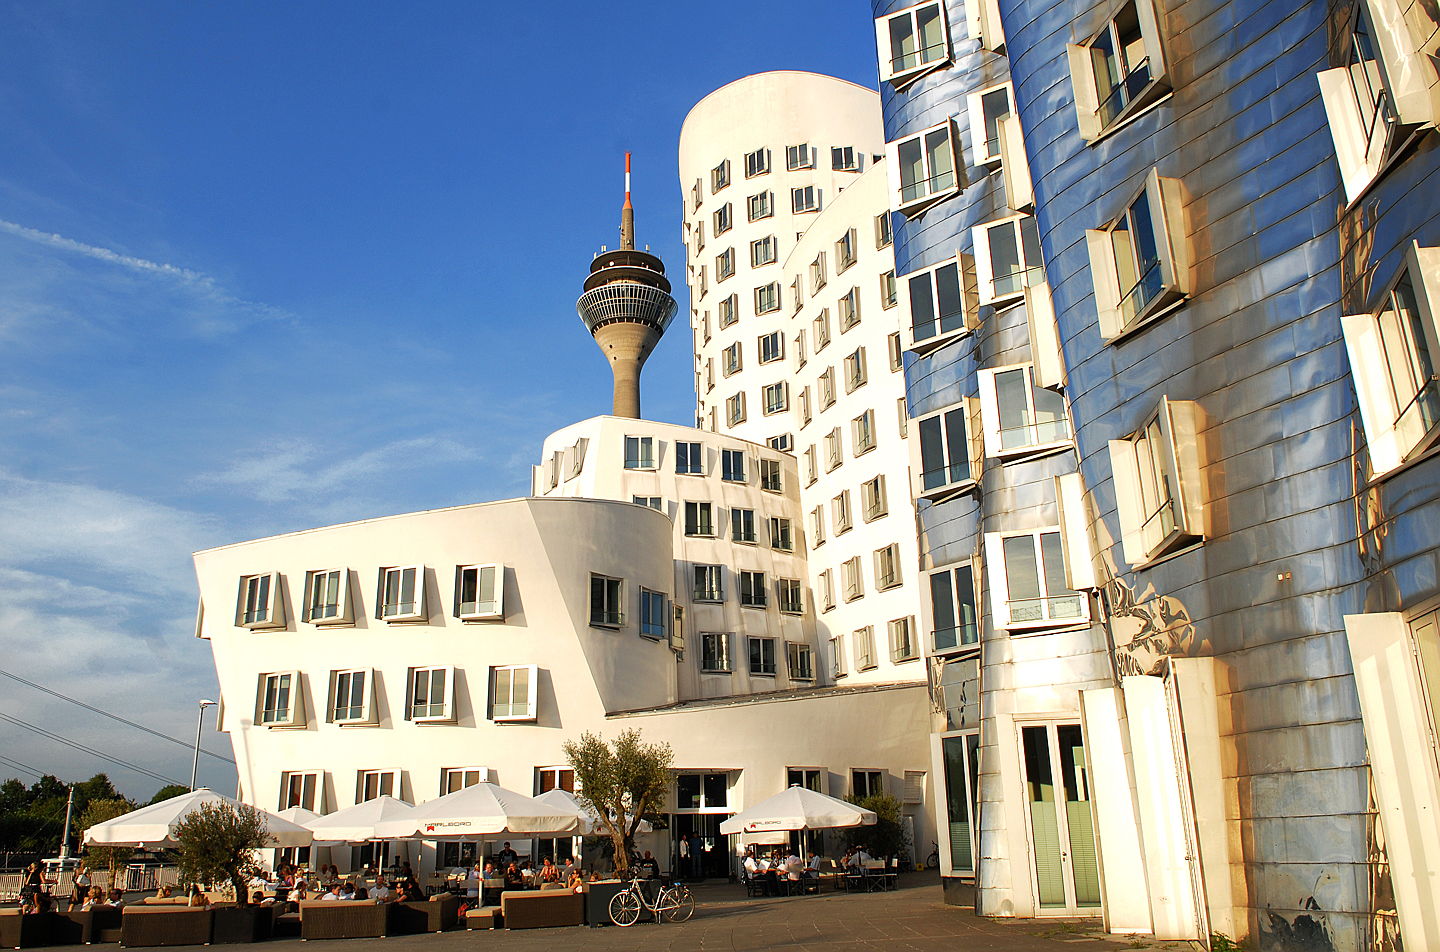  Düsseldorf
- Professionelle Hilfe beim An-und Verkauf ihrer Düsseldorfer Immobilie erhalten Sie bei unseren Immobilienmaklern vor Ort. Informieren Sie sich auf unserer Website